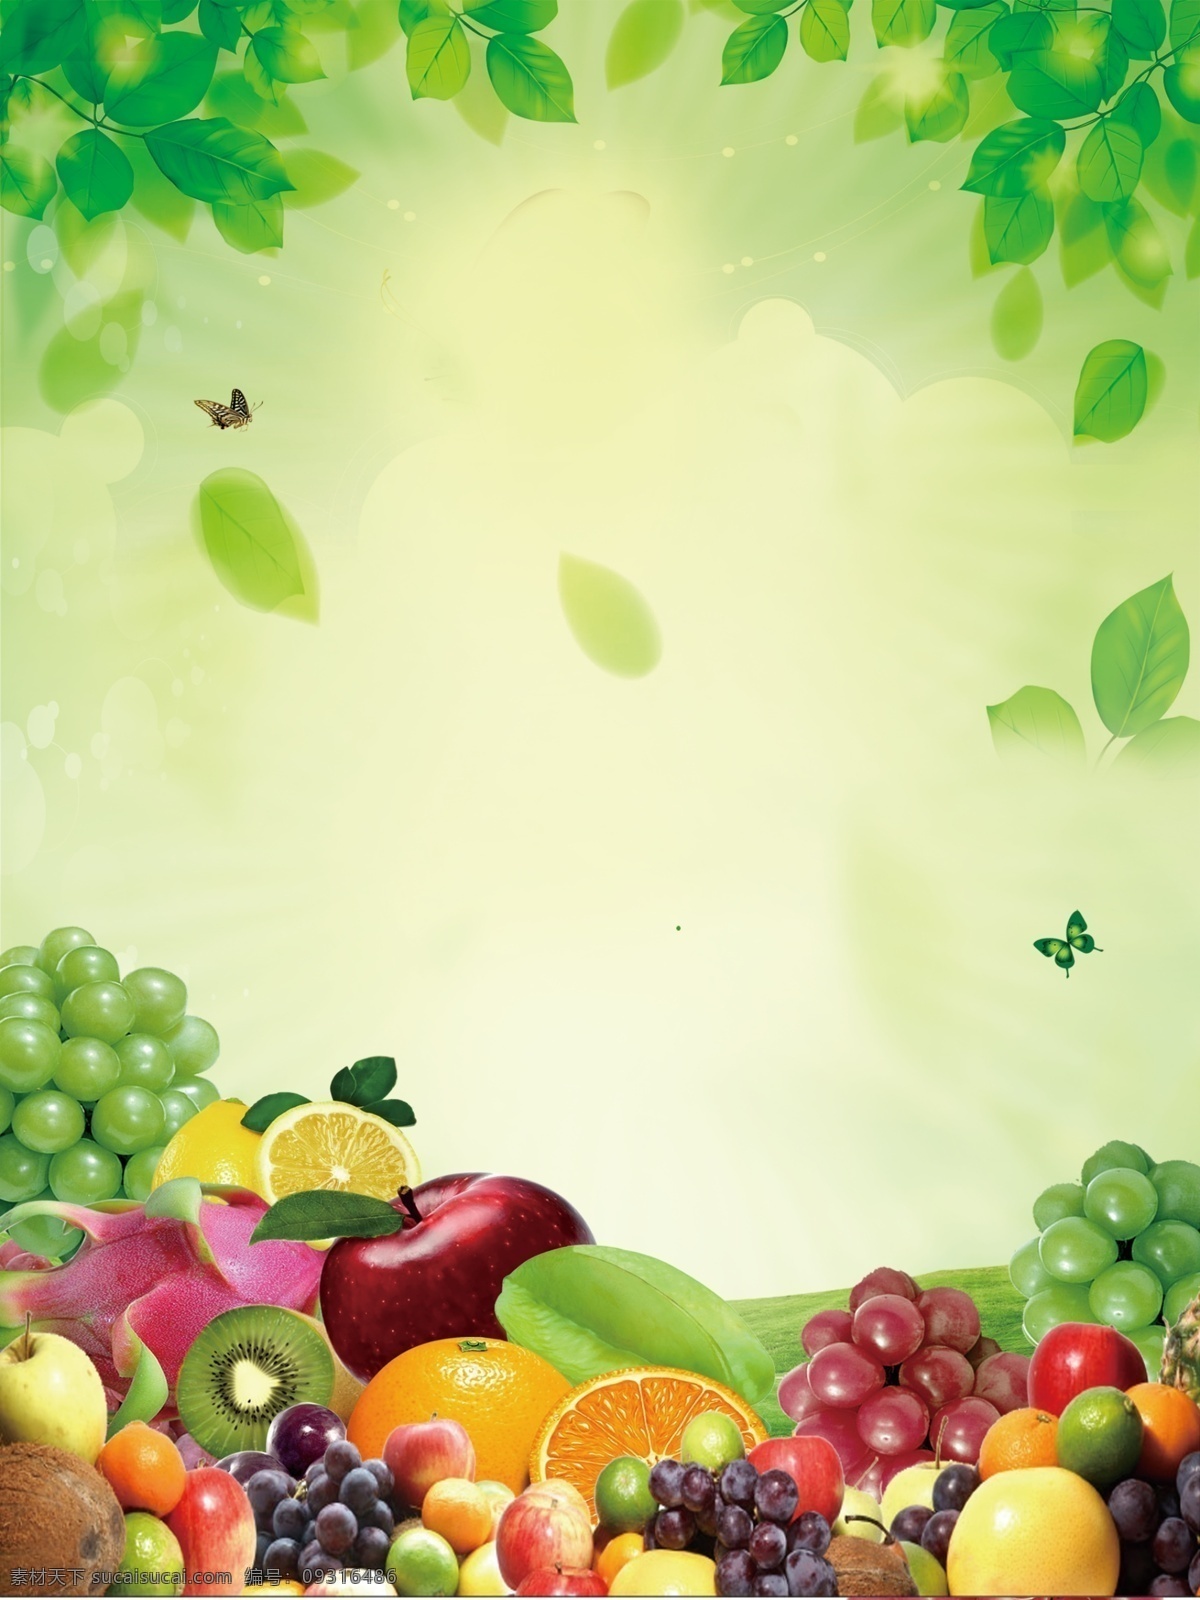 水果 树叶 苹果 葡萄 橘子 桔子 蝴蝶 柠檬 清新 春天 水果种类 各种水果 火龙果 香蕉 写生 素描 养眼水果 客厅画 水果画 广告设计模板 源文件